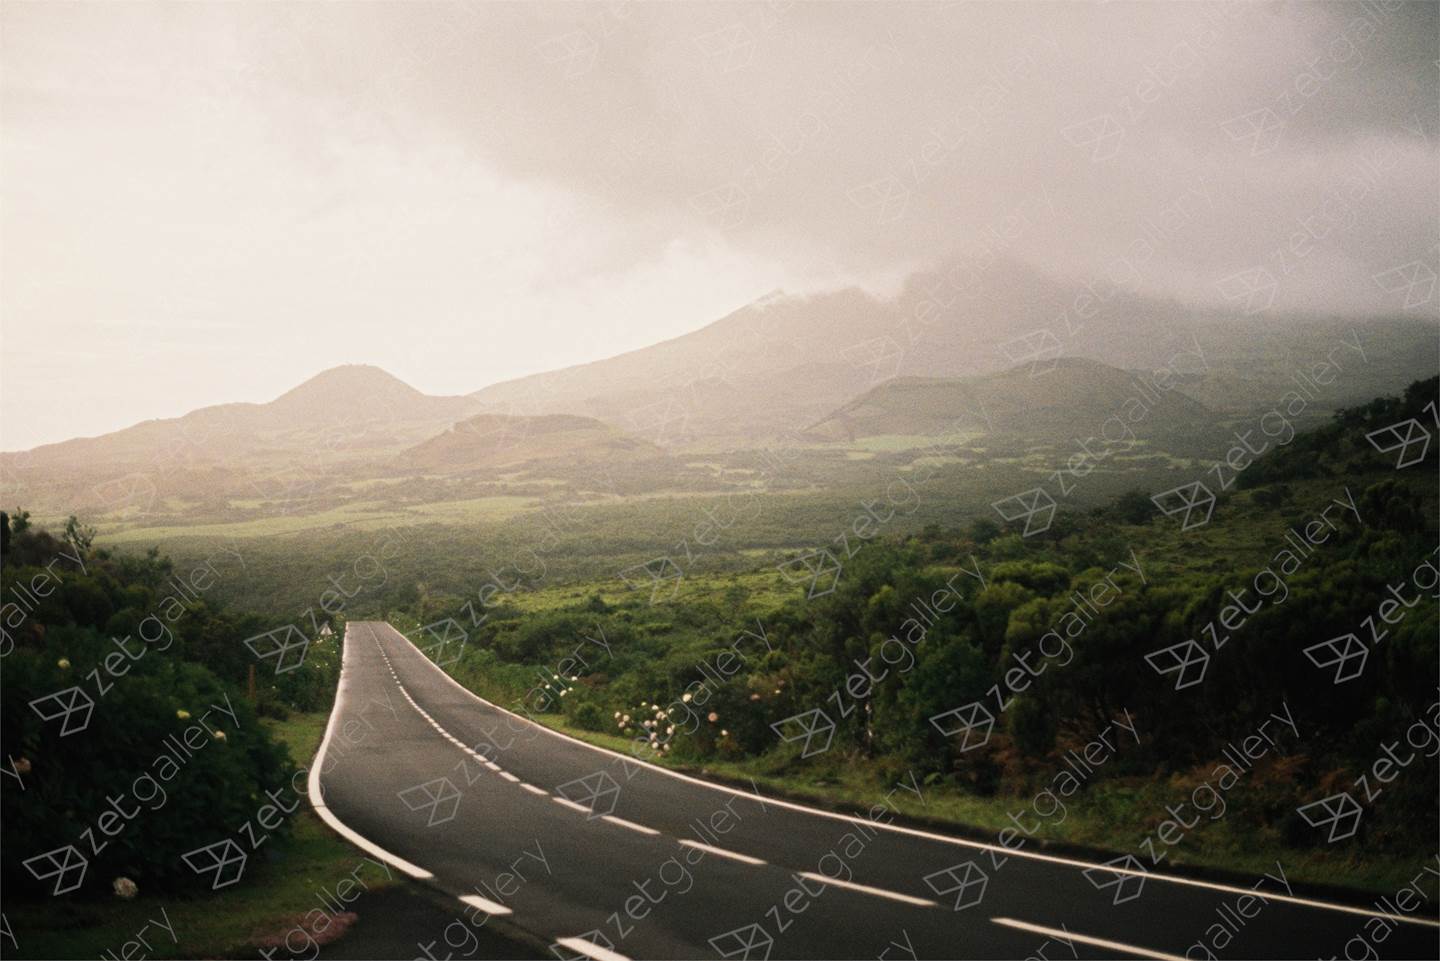 Uma estrada no meio do nada / A road in the middle of nowhere, original Paysage Analogique La photographie par Miguel De